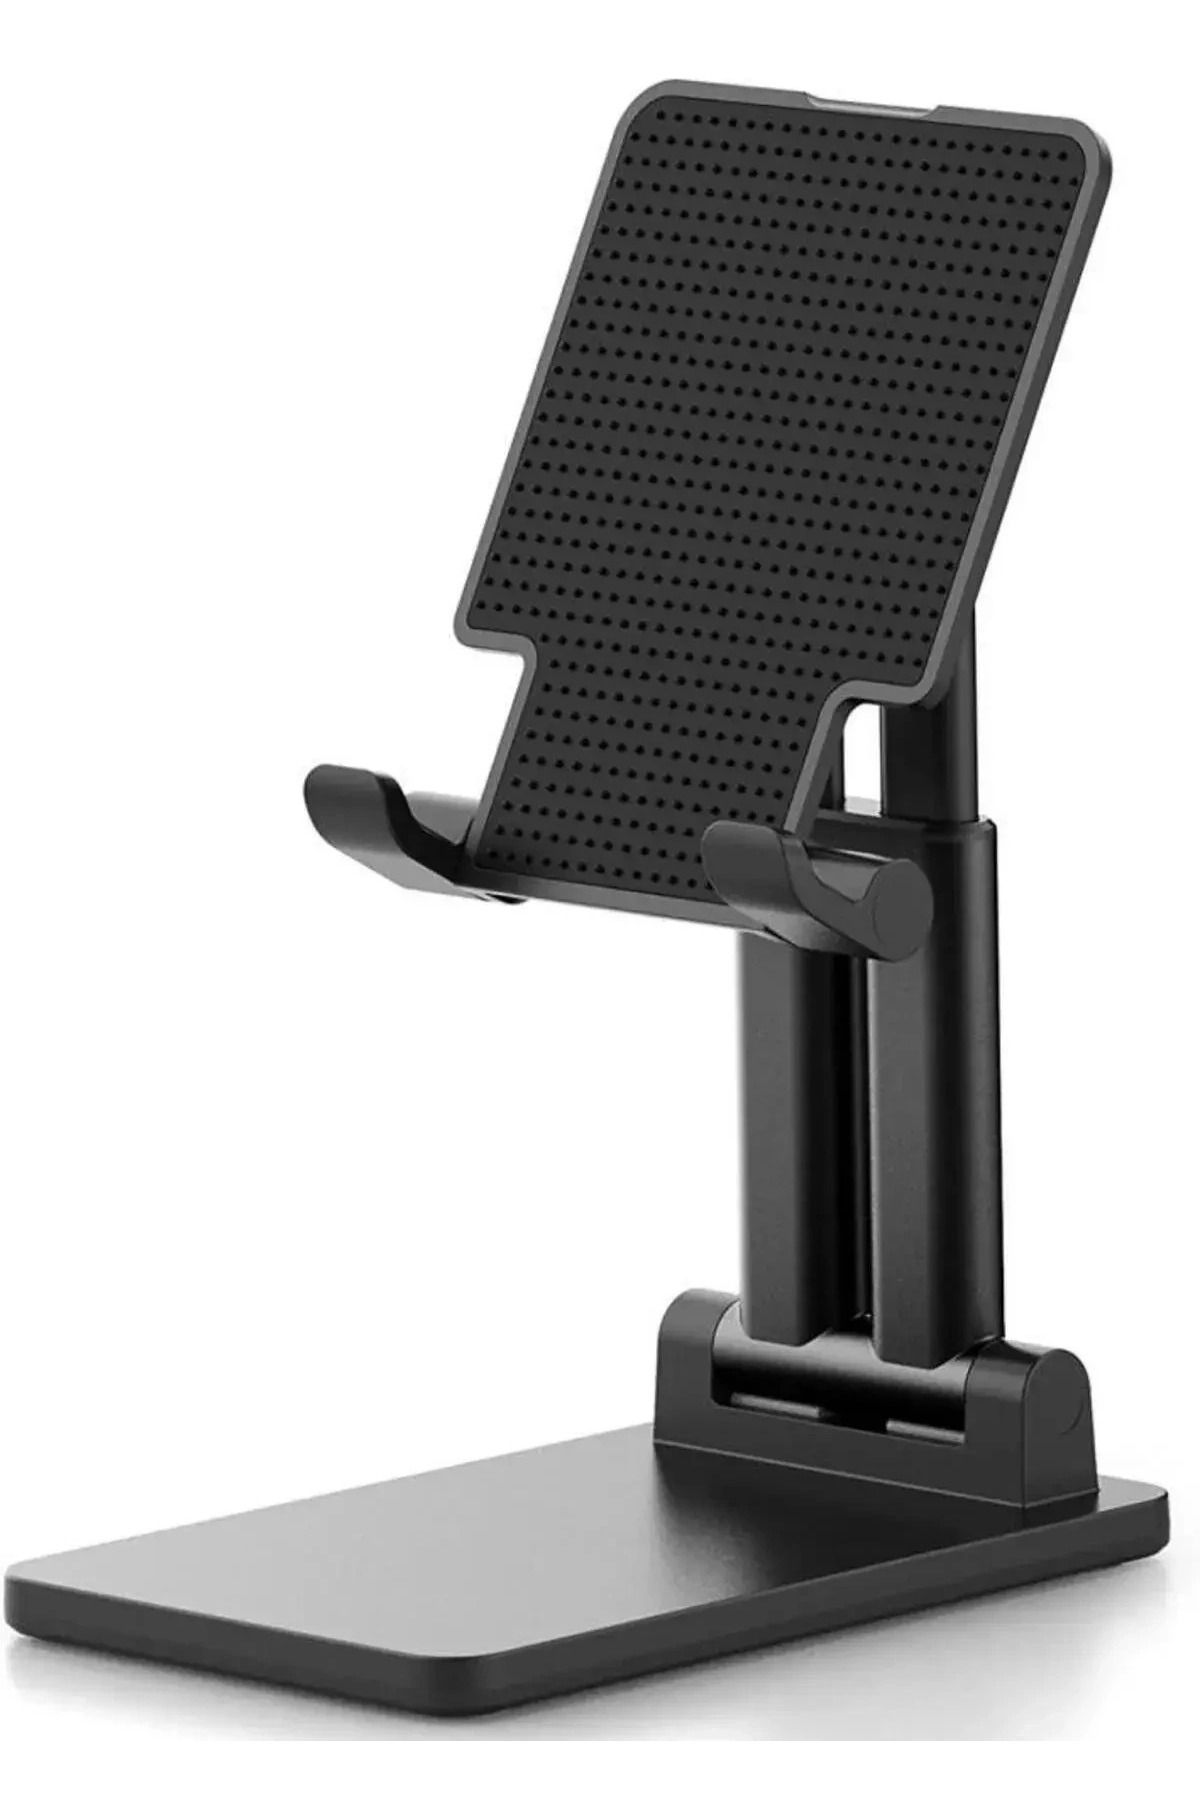 MEKs Masaüstü Telefon Standı Yükseklik ve Bakış Açısı Ayarlanabilir Telefon Tutucu ve Tablet Standı Siyah